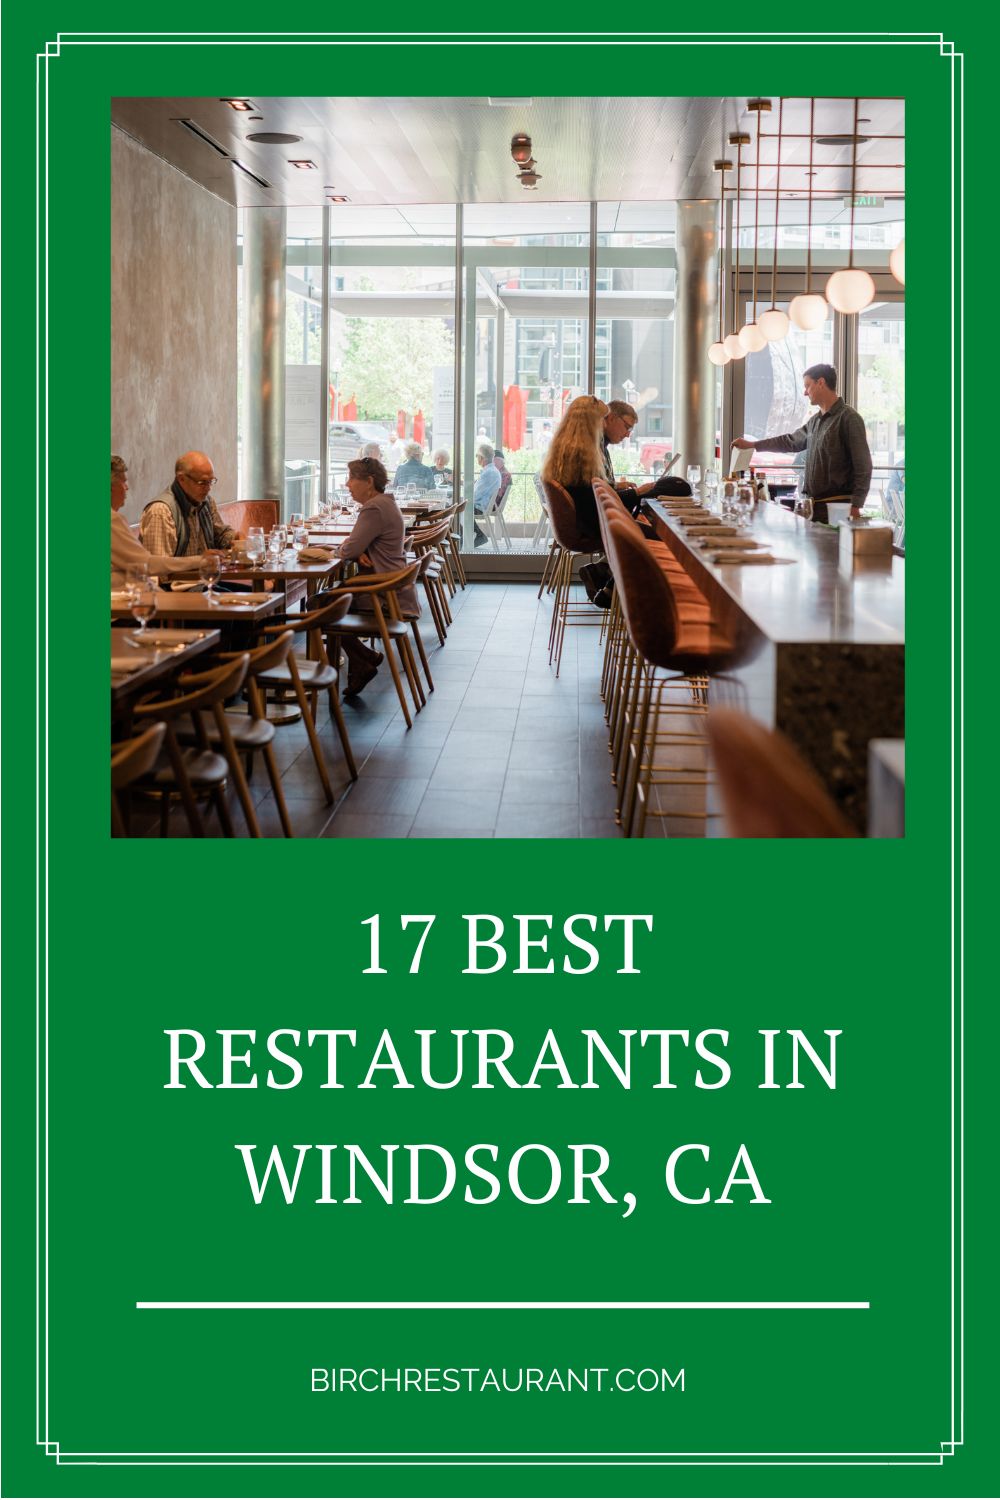 Best Restaurants in Windsor